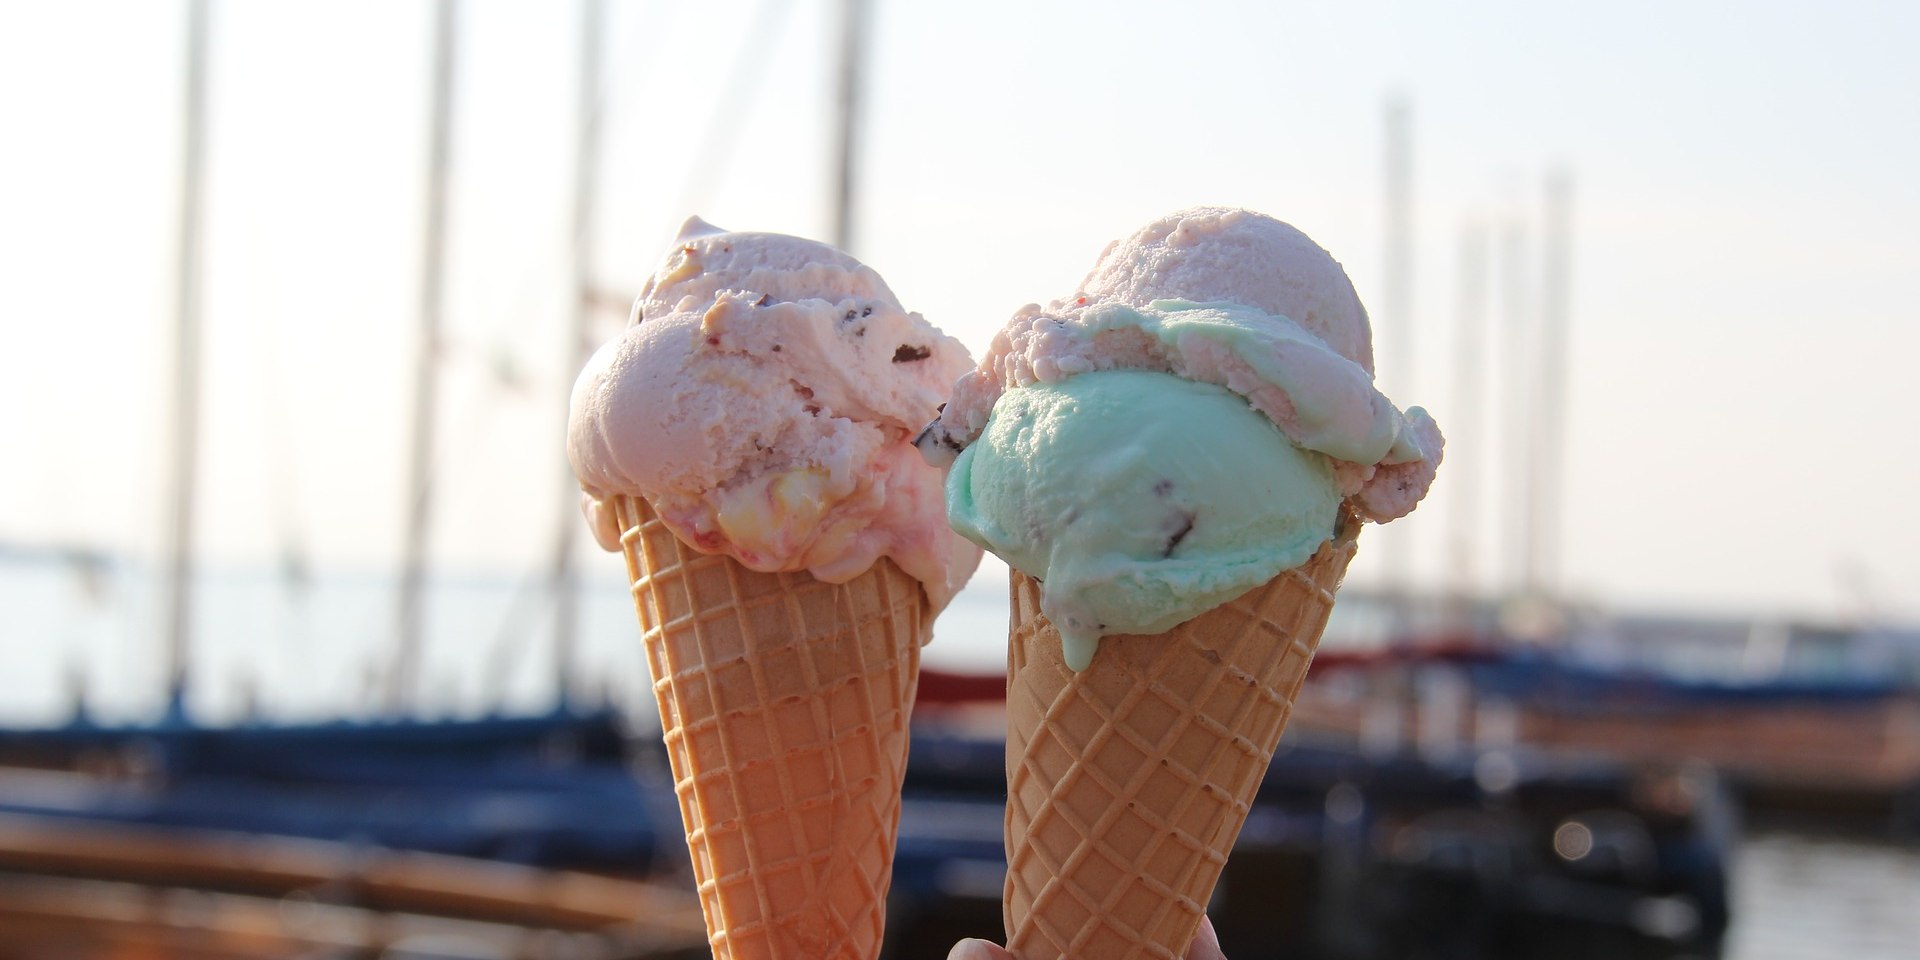 Leckeres Eis im Sommer am Steg genießen., © Pixabay